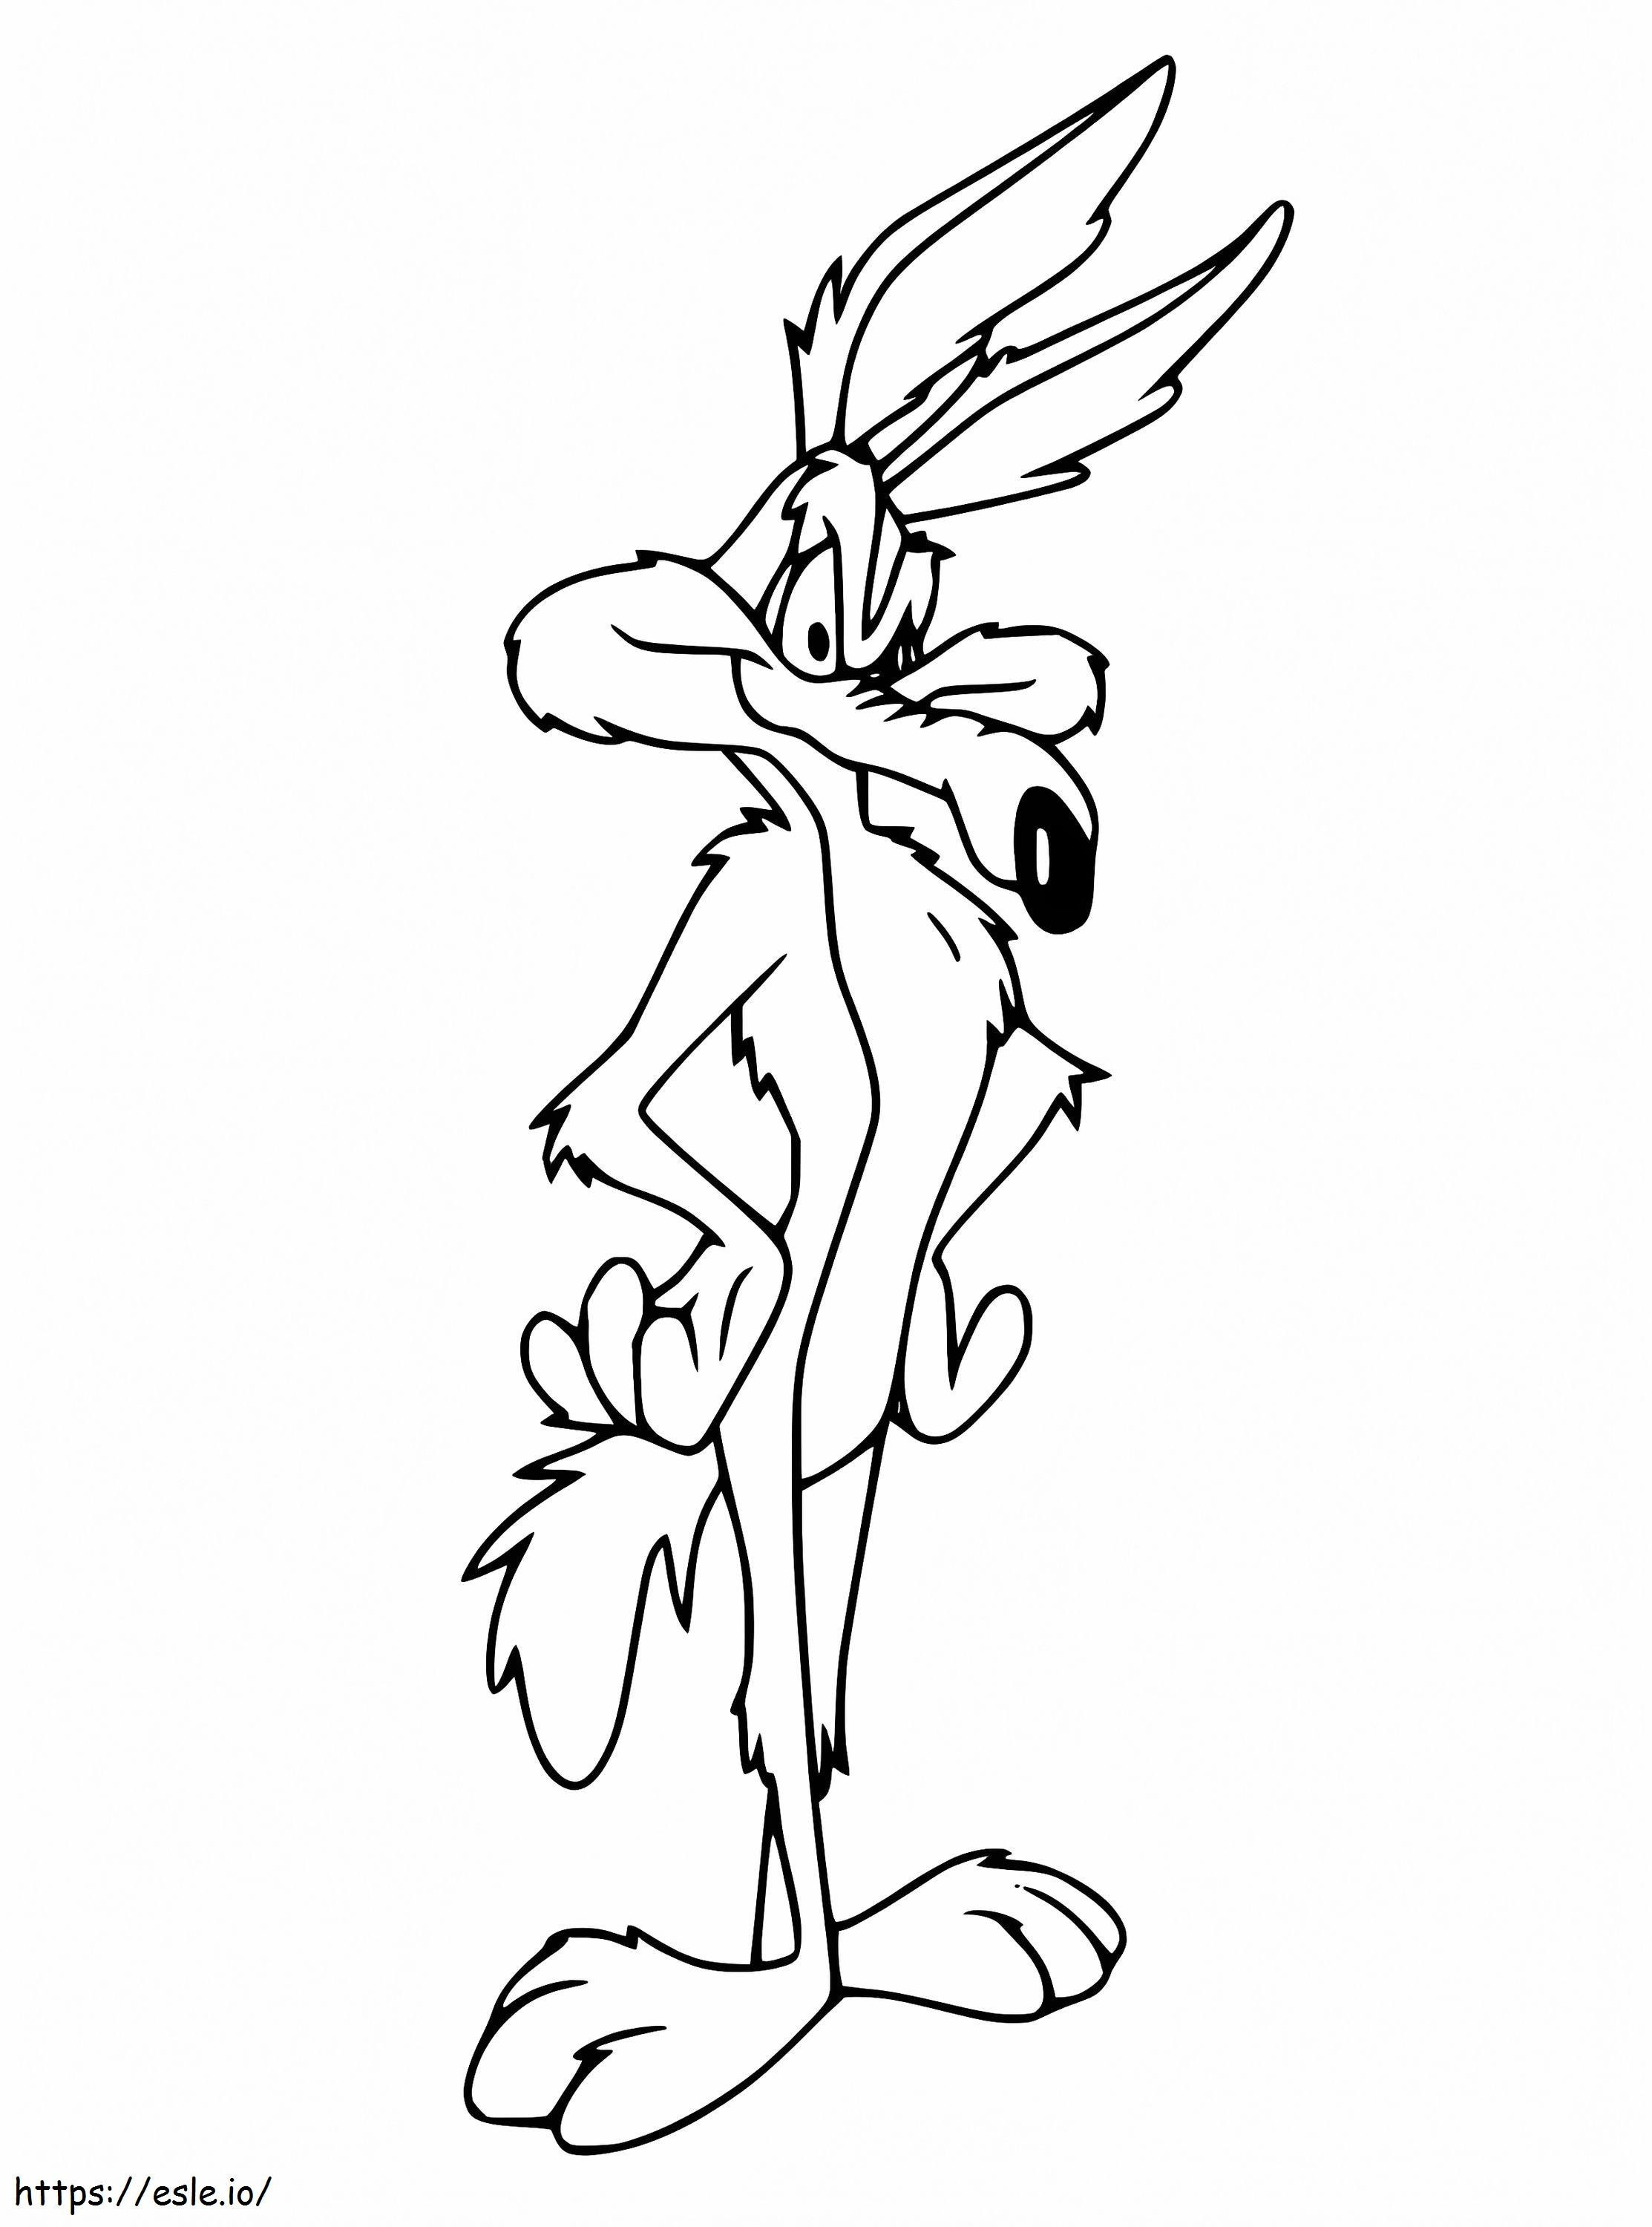 Wile E Coyote de Looney Tunes para colorear